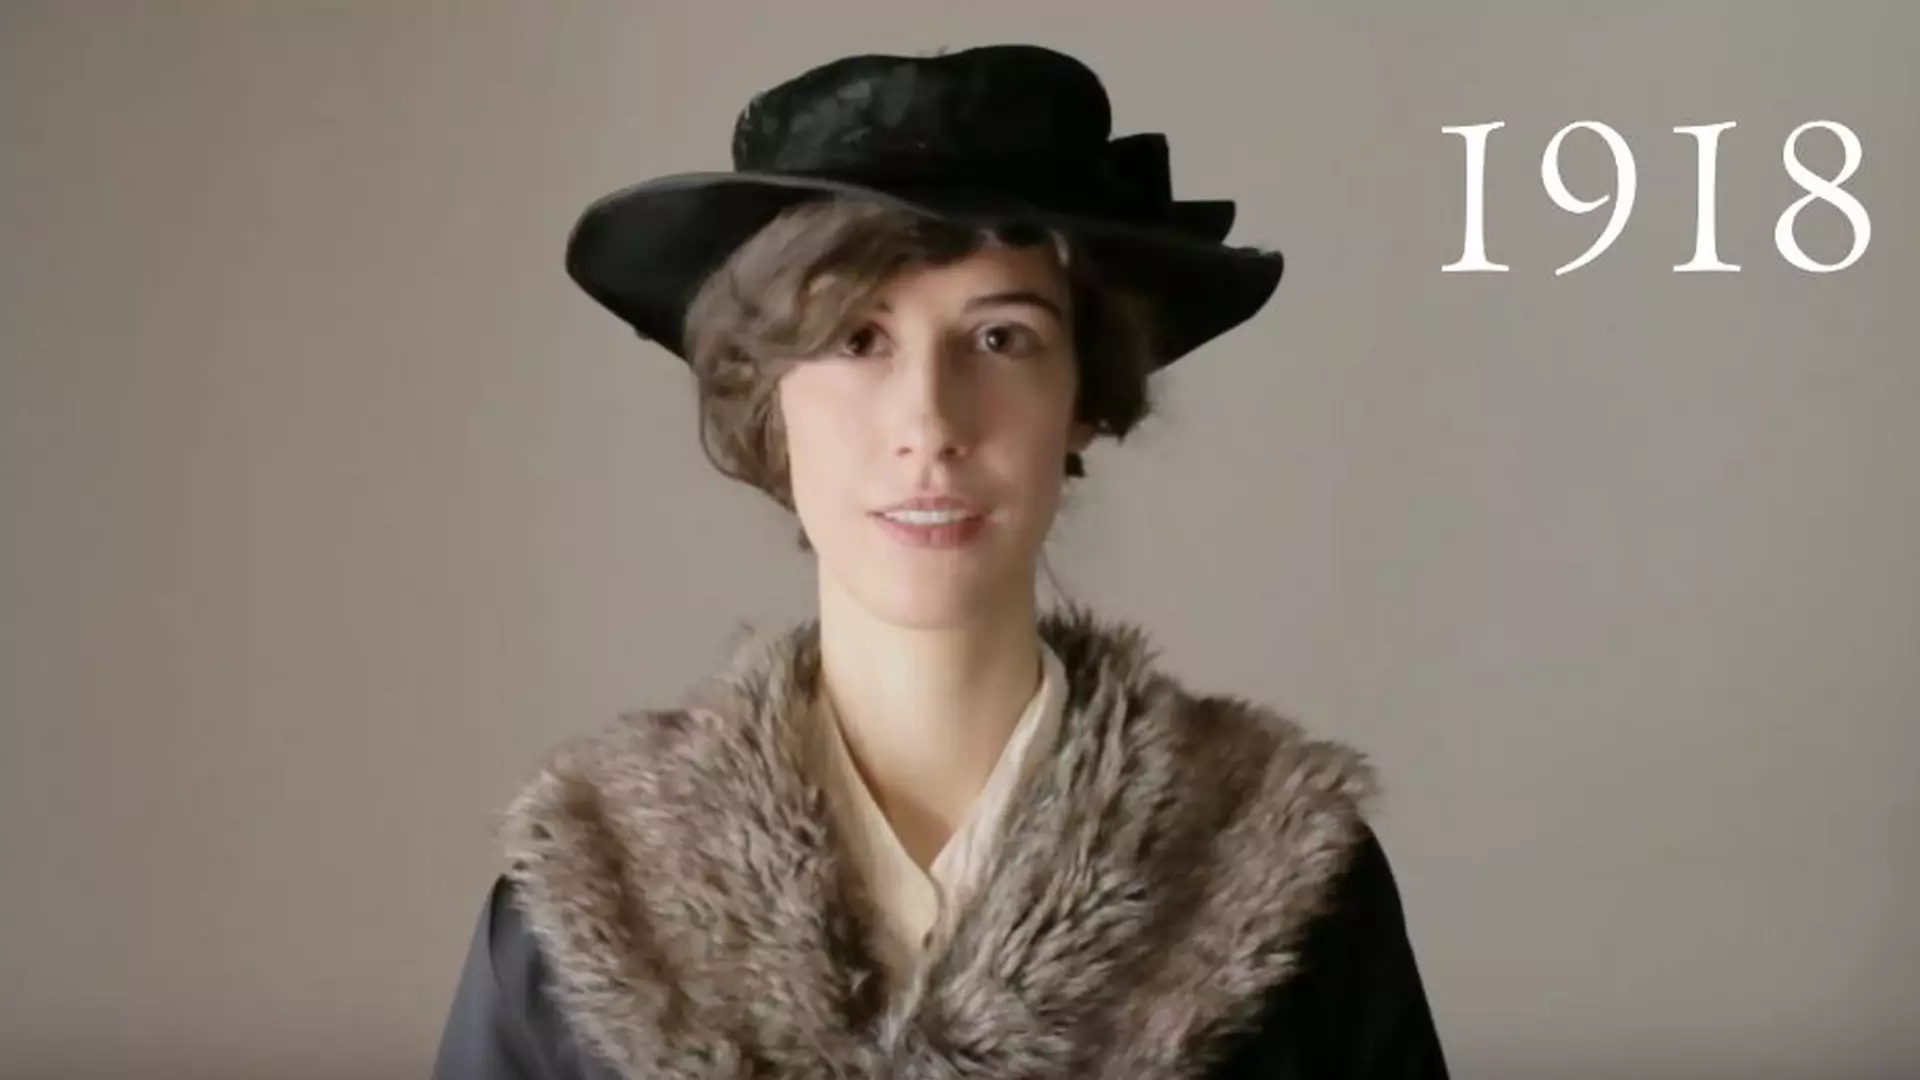 100 lat polskiej mody w 3 minuty. Rozmawiamy z Karoliną, która jest odpowiedzialna za projekt